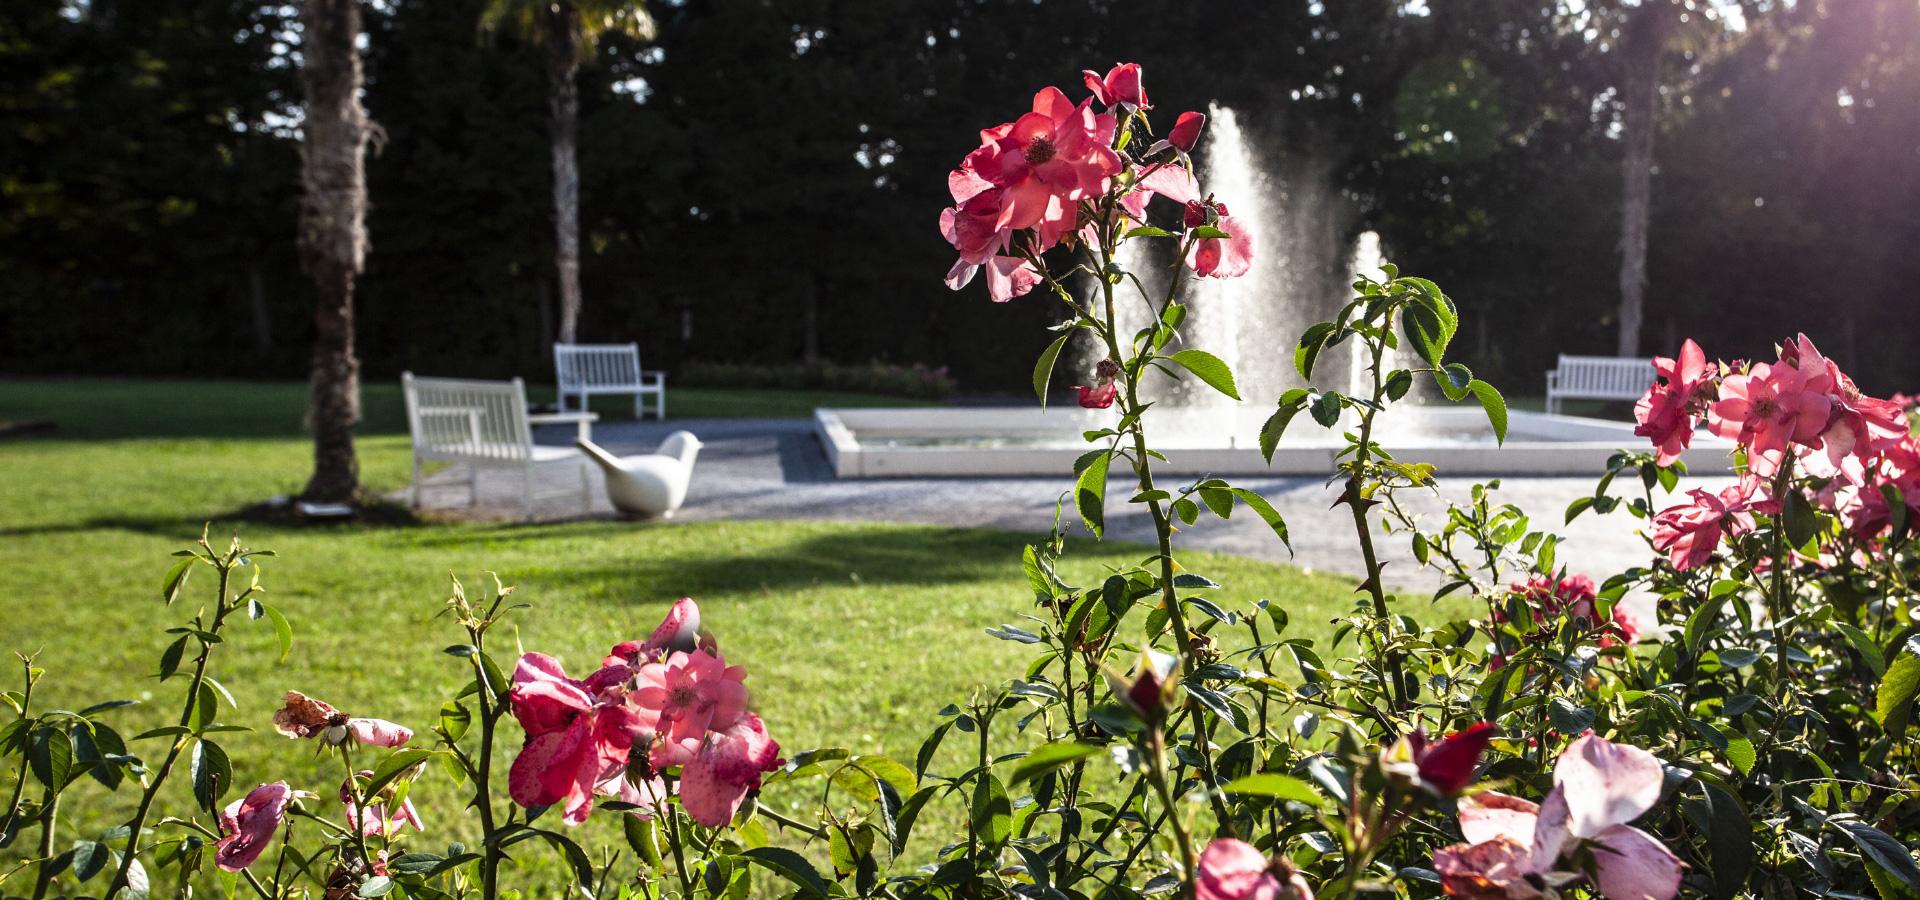 Giardino con rose, fontana e panchine bianche in una giornata di sole.